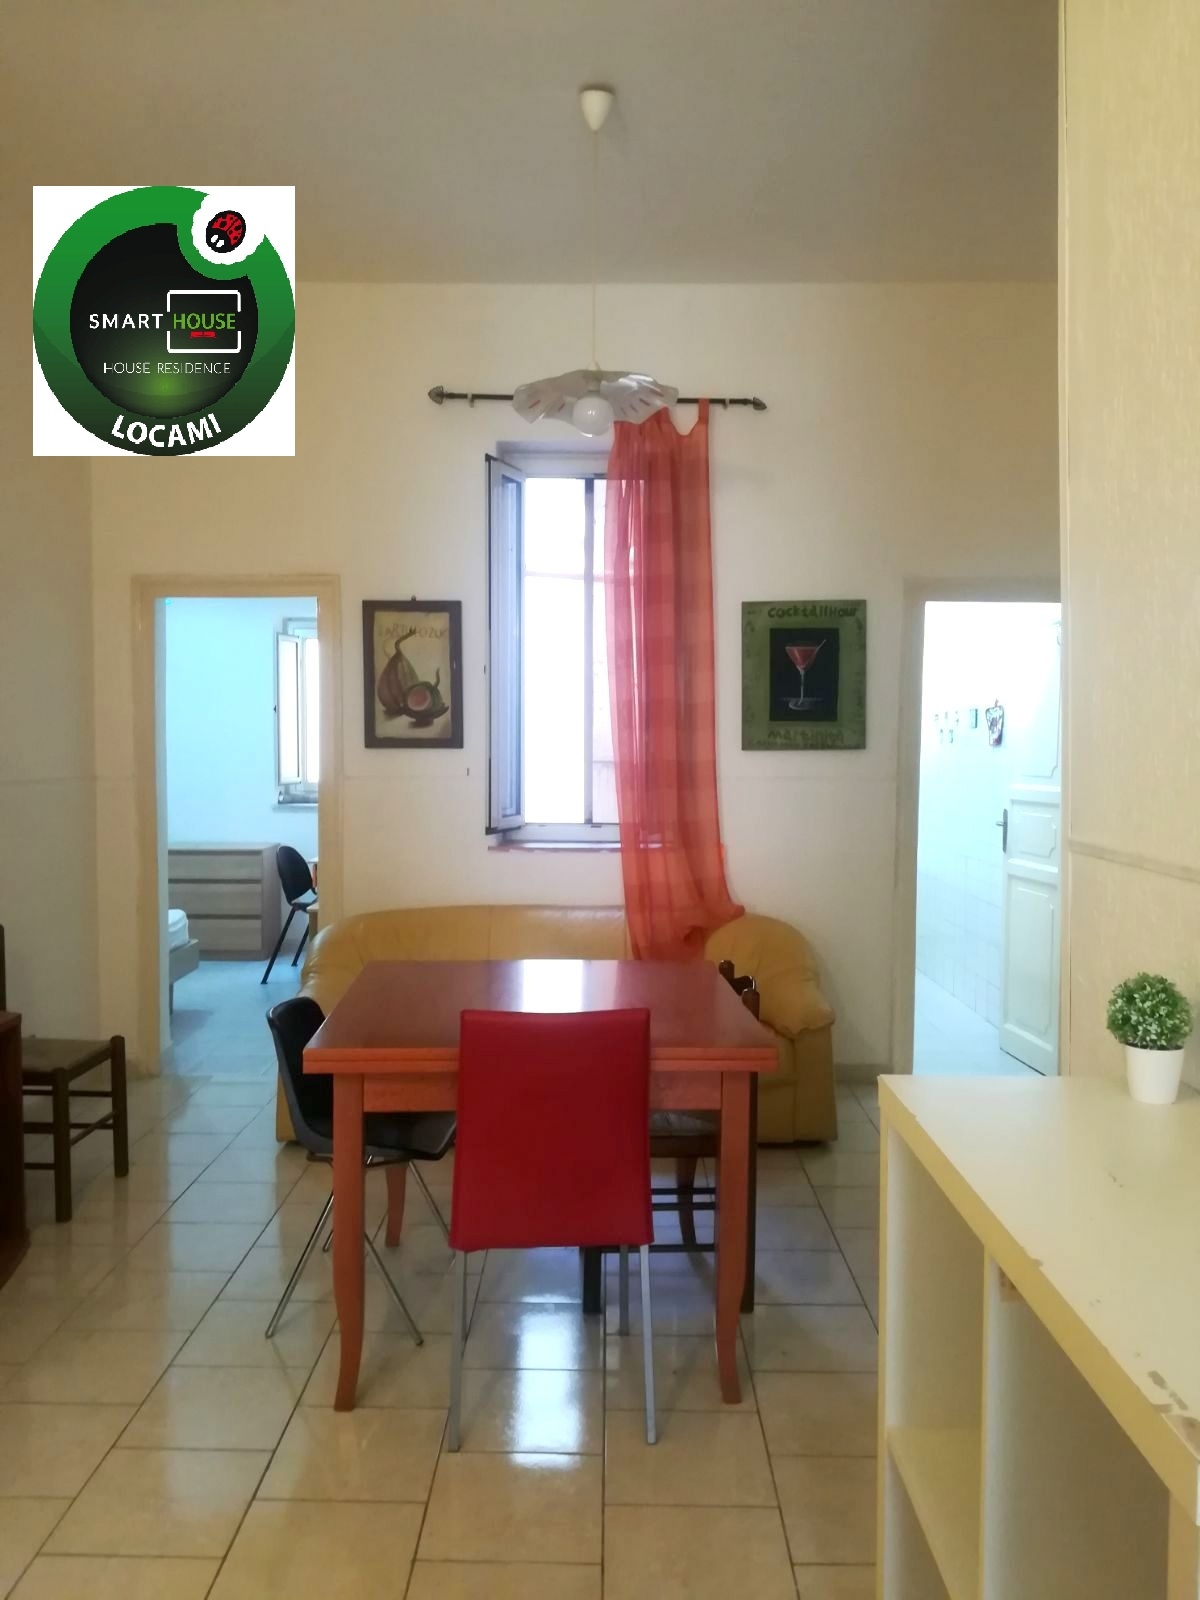 Appartamento in affitto a Palermo, 3 locali, zona Località: CorsoTukory, prezzo € 500 | CambioCasa.it